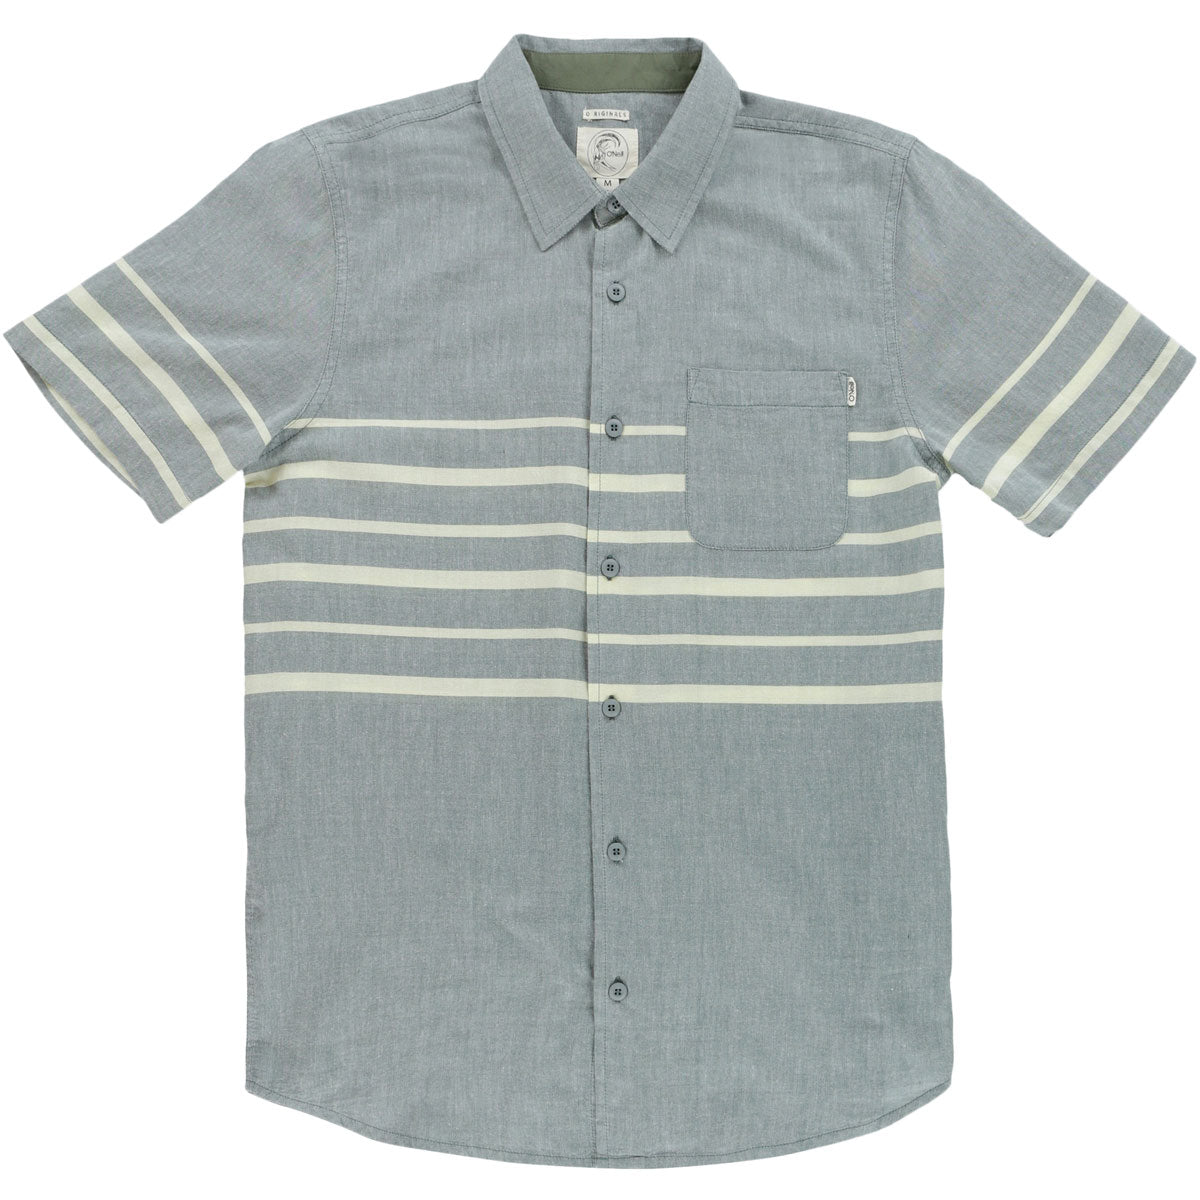 O'Neill Ledger Men's Button Up Short-Sleeve Shirts - Fatigue